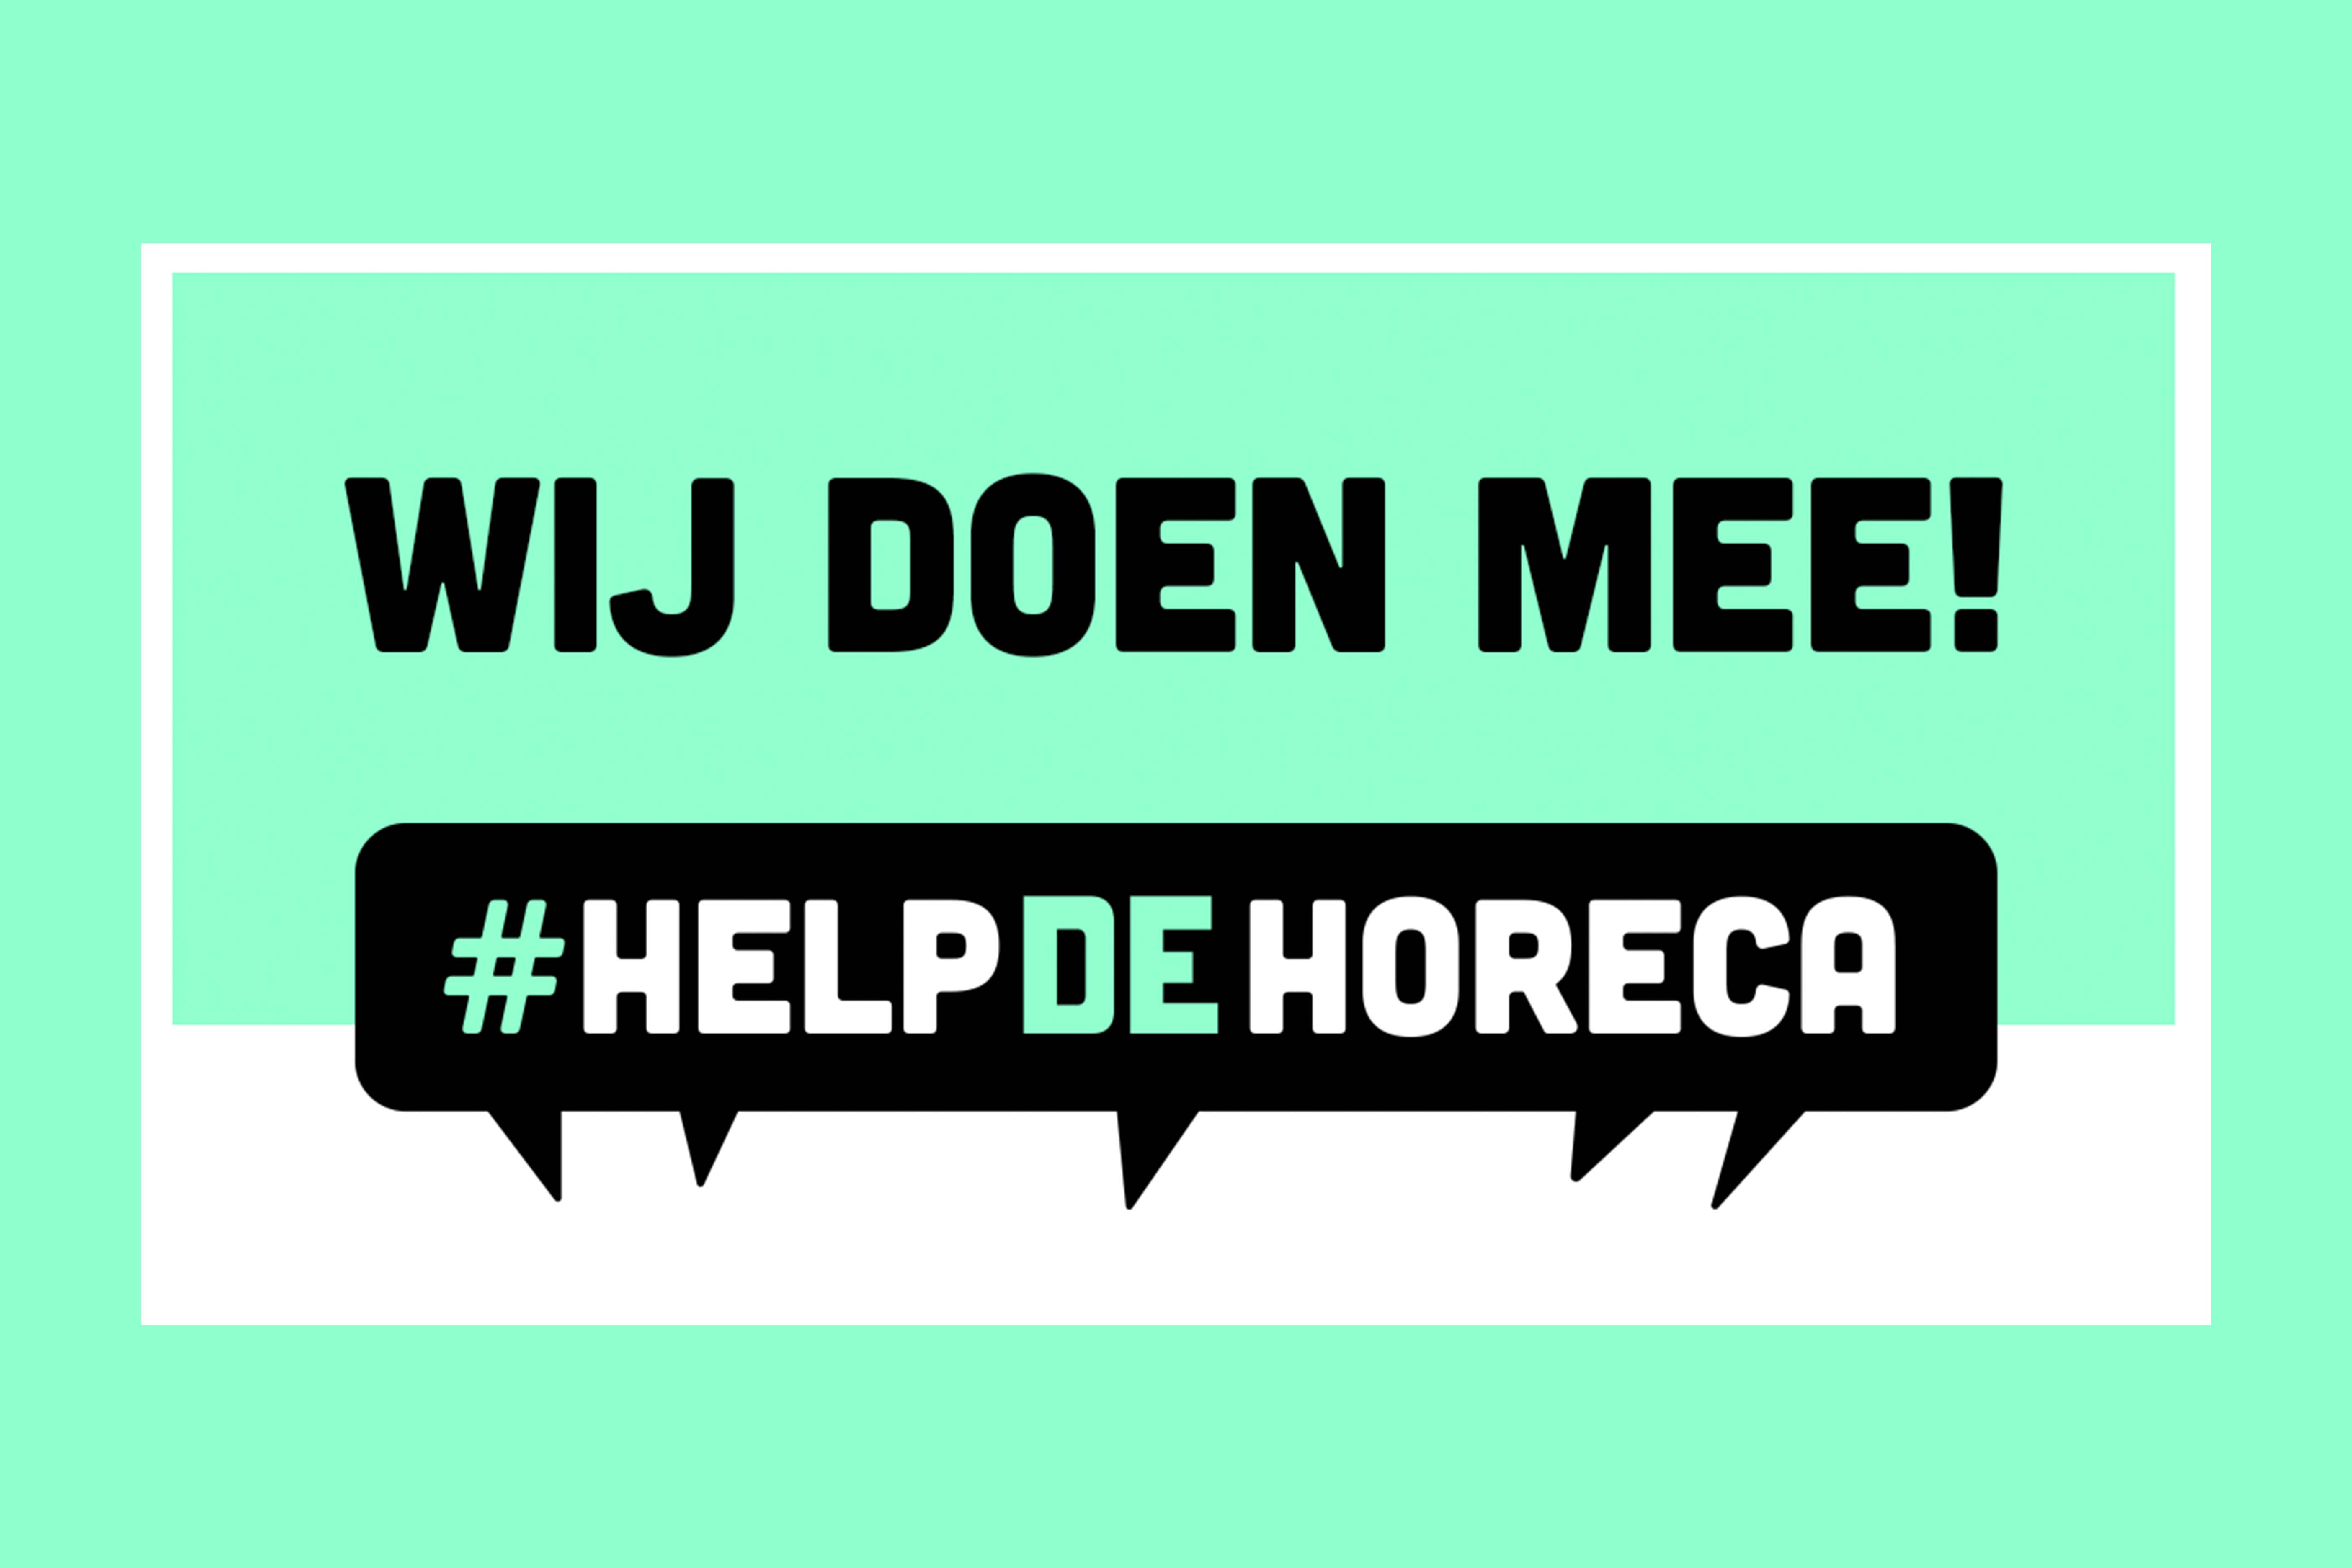 HELP DE HORECA